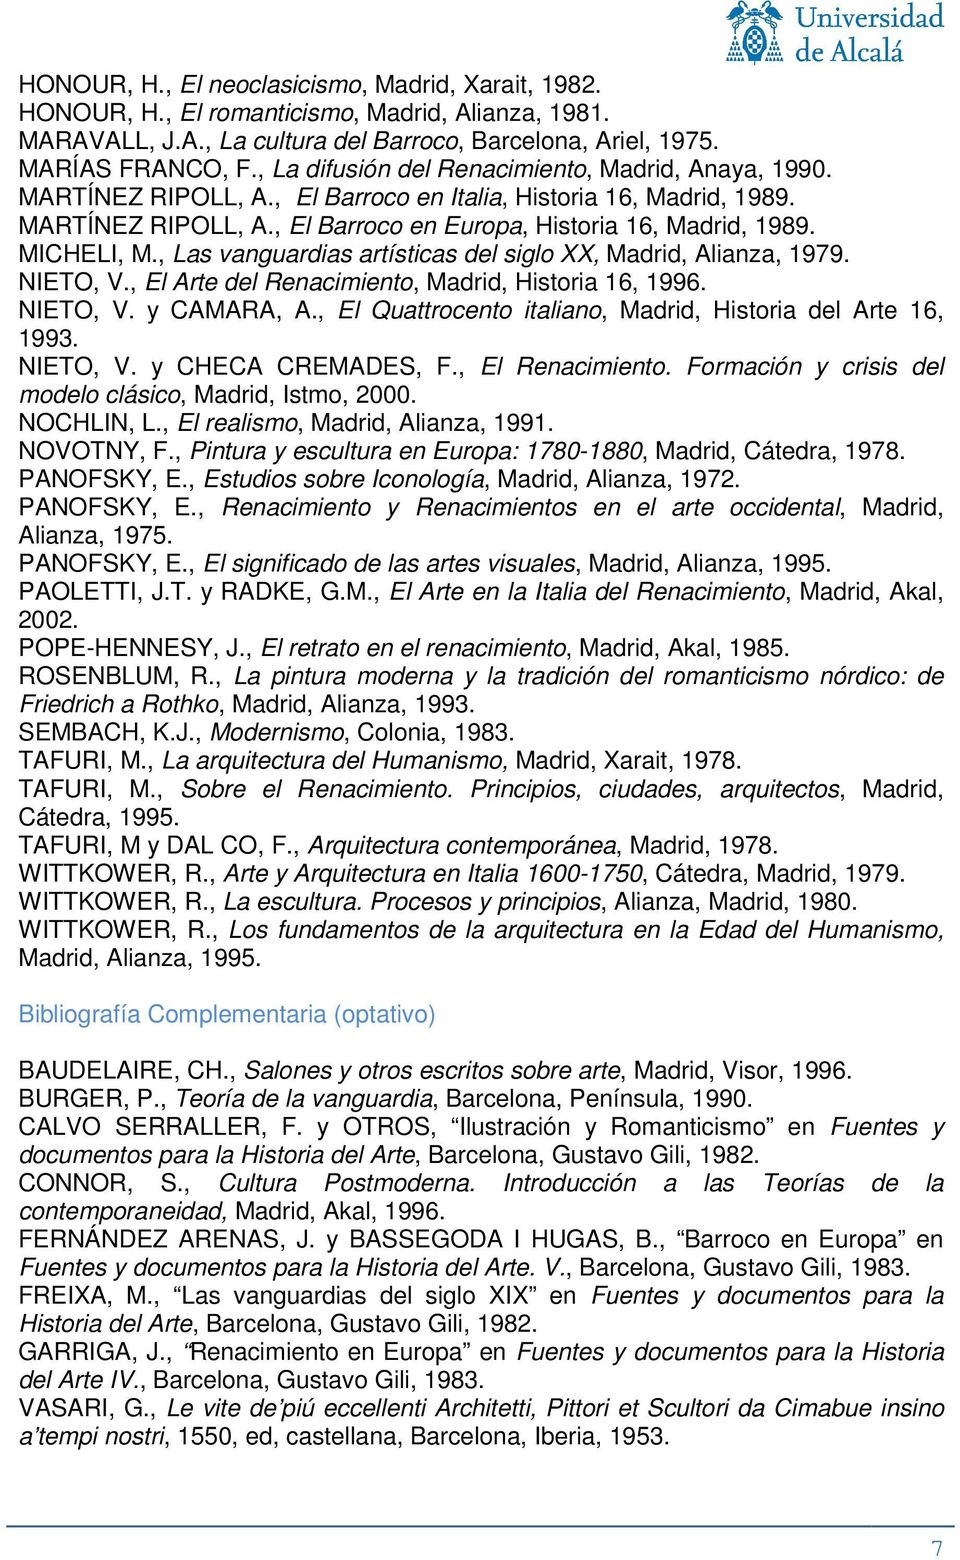 MICHELI, M., Las vanguardias artísticas del siglo XX, Madrid, Alianza, 1979. NIETO, V., El Arte del Renacimiento, Madrid, Historia 16, 1996. NIETO, V. y CAMARA, A.